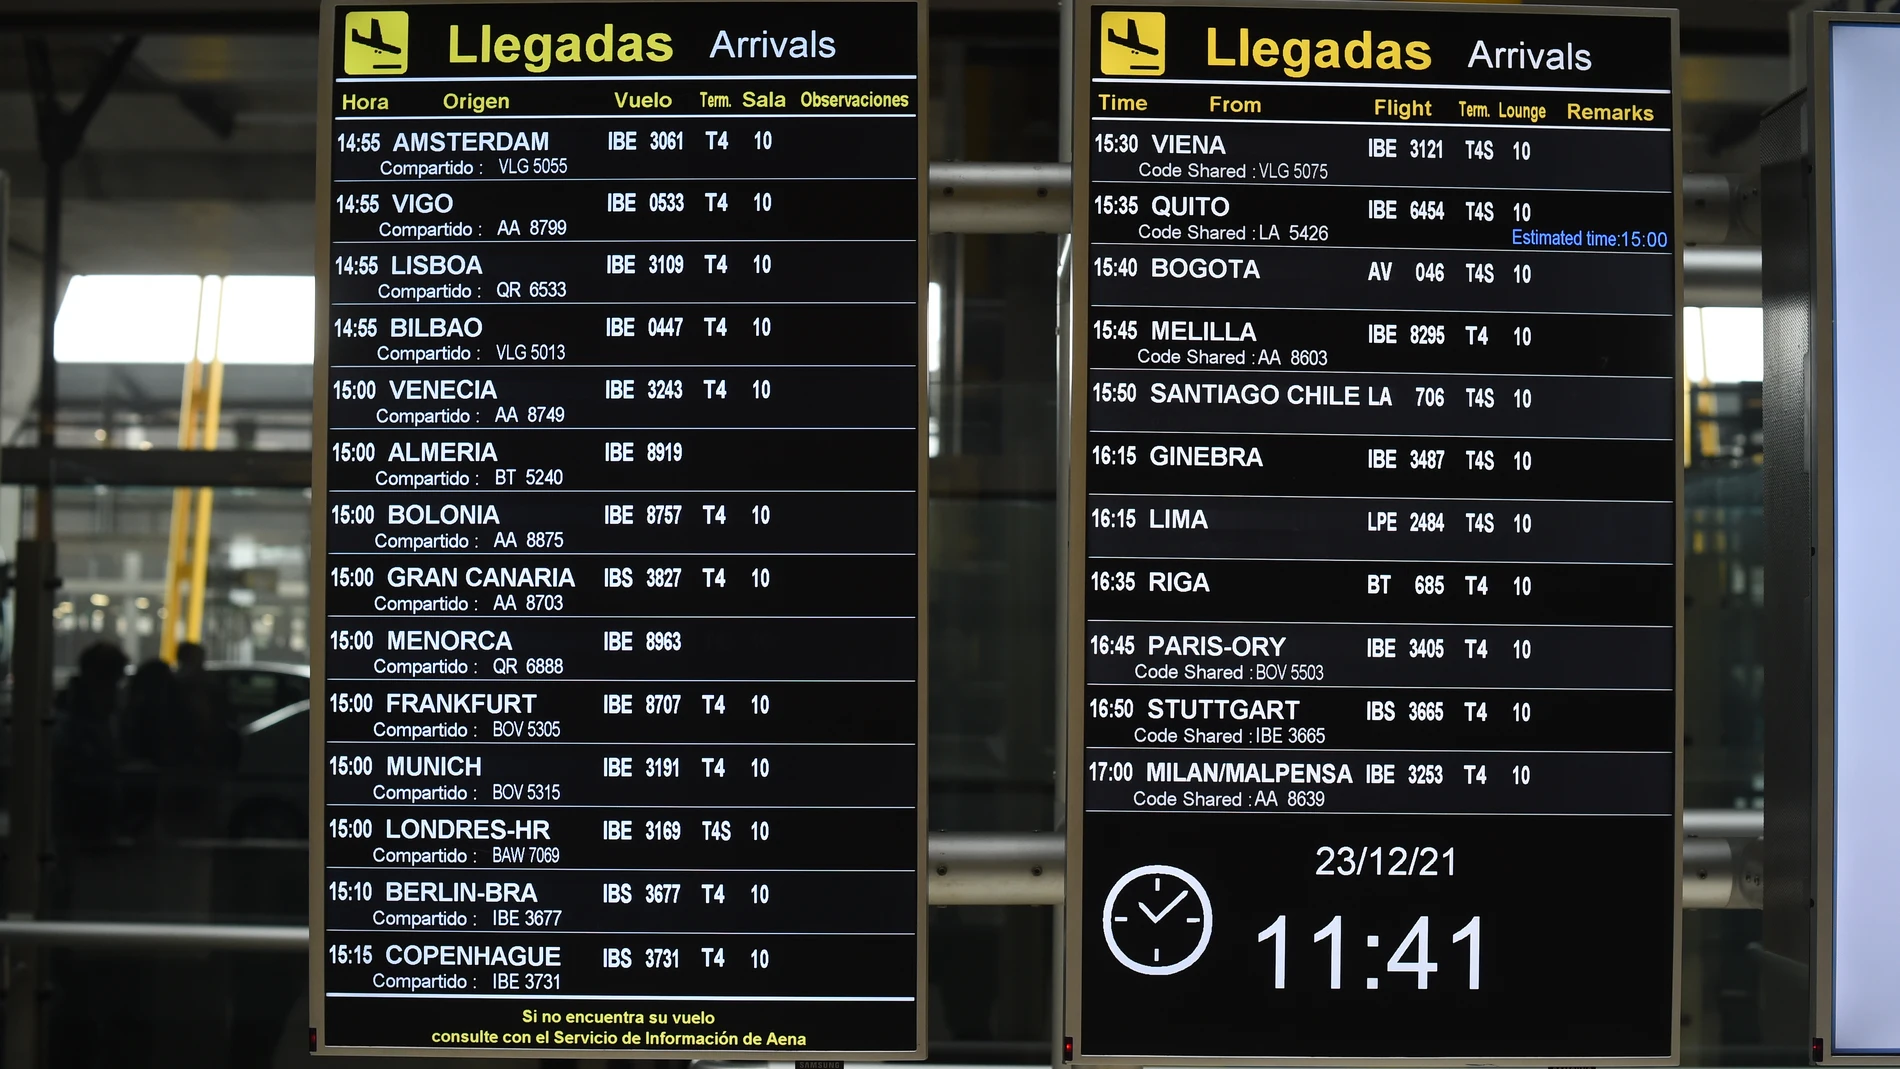 Dos paneles de llegadas en el aeropuerto de Adolfo Suárez, el día de Nochebuena. Iberia opera el 100% de su red global previa a la pandemia durante estas fechas navideñas.